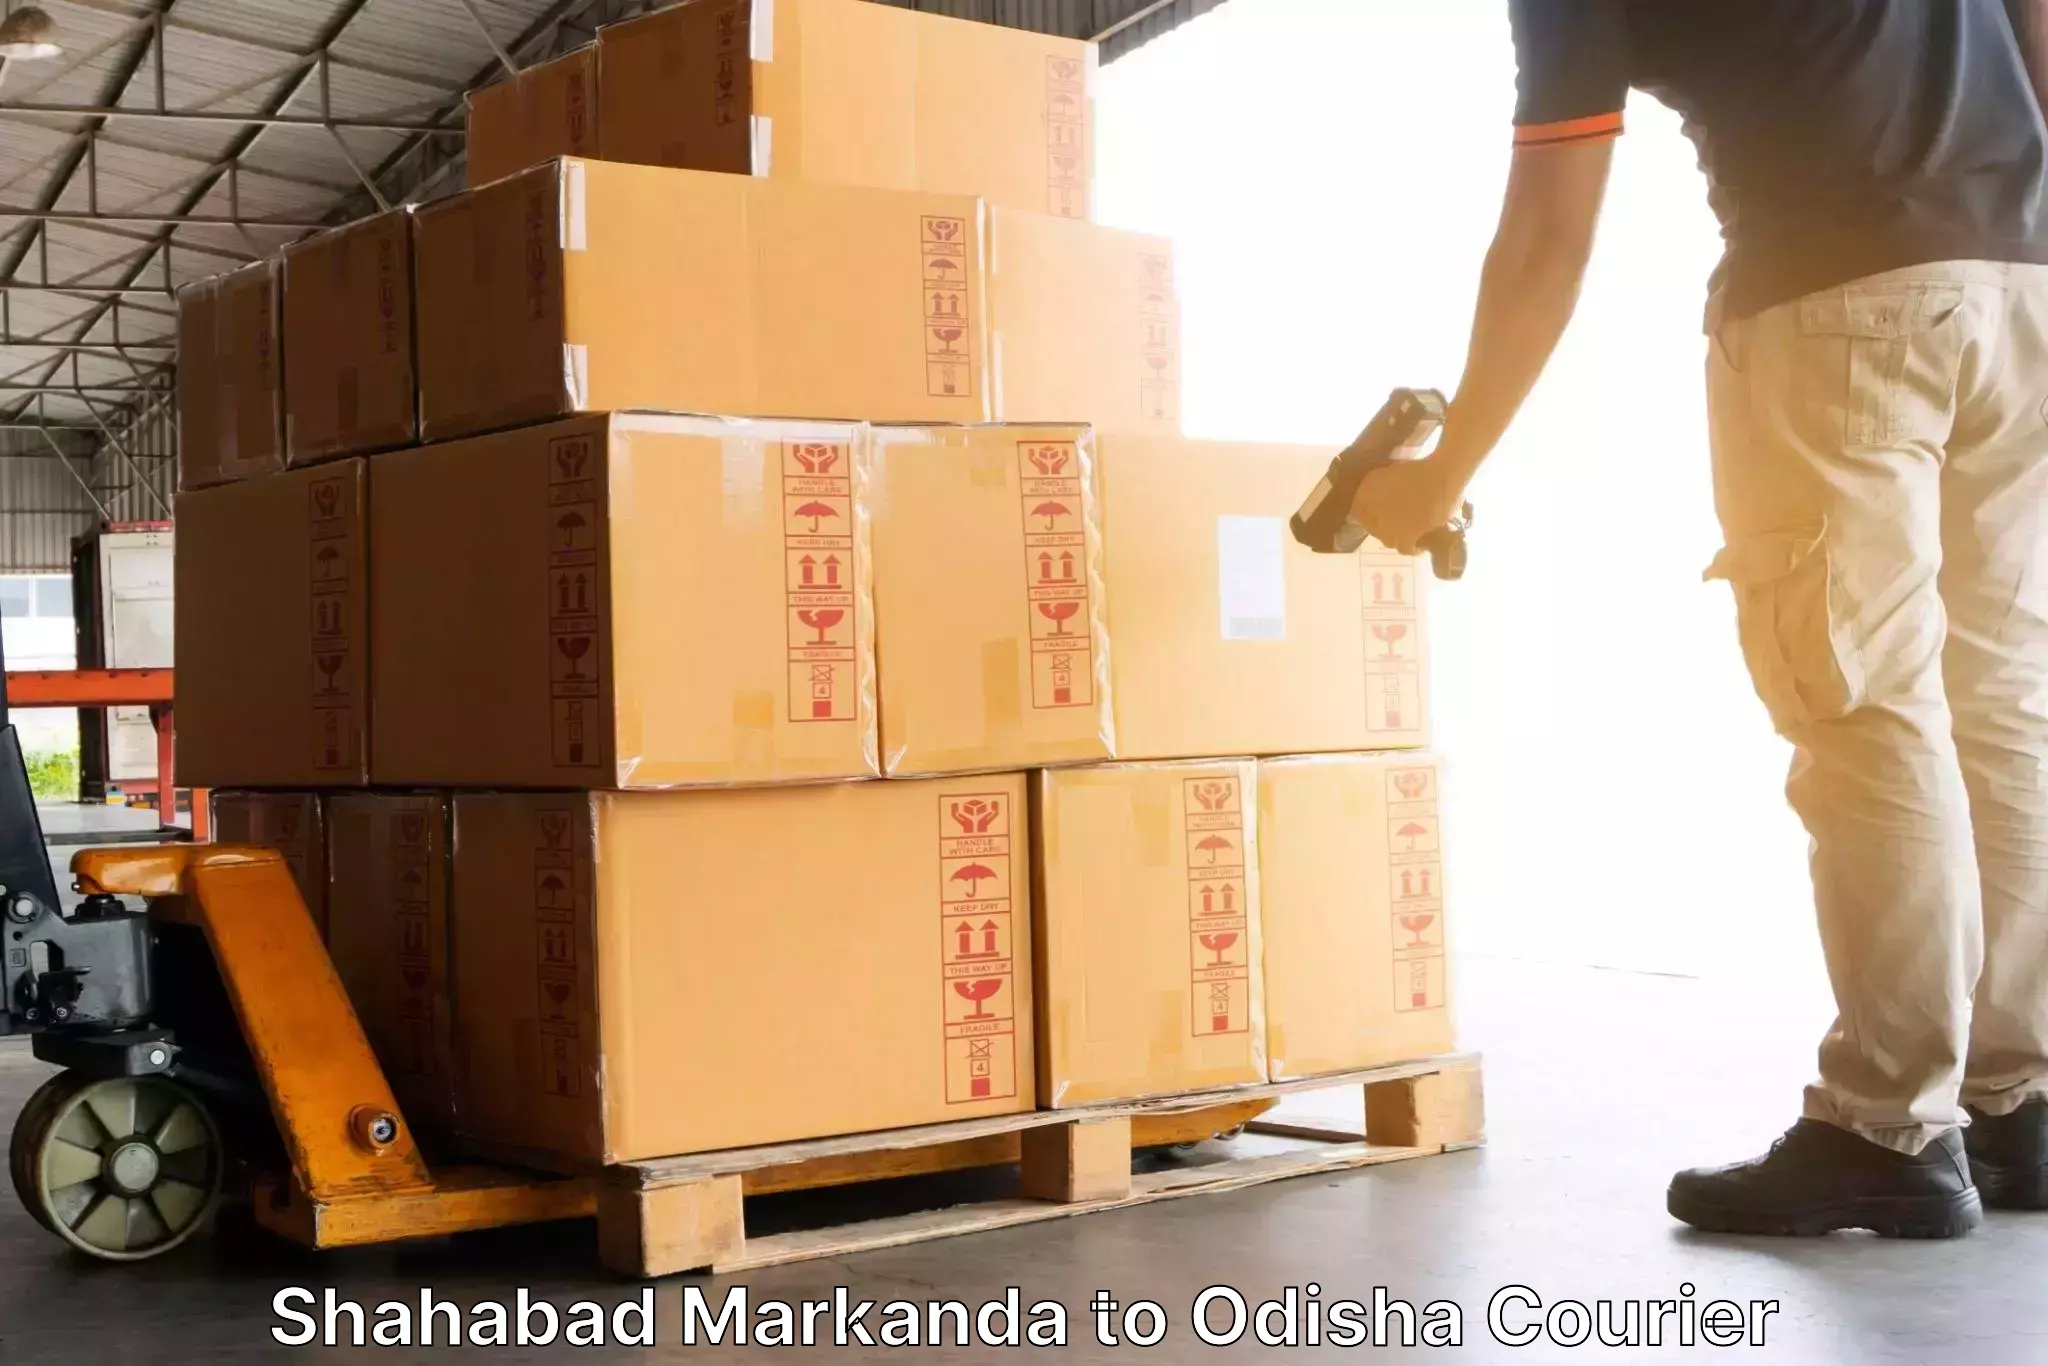 Efficient parcel service Shahabad Markanda to Agarpada